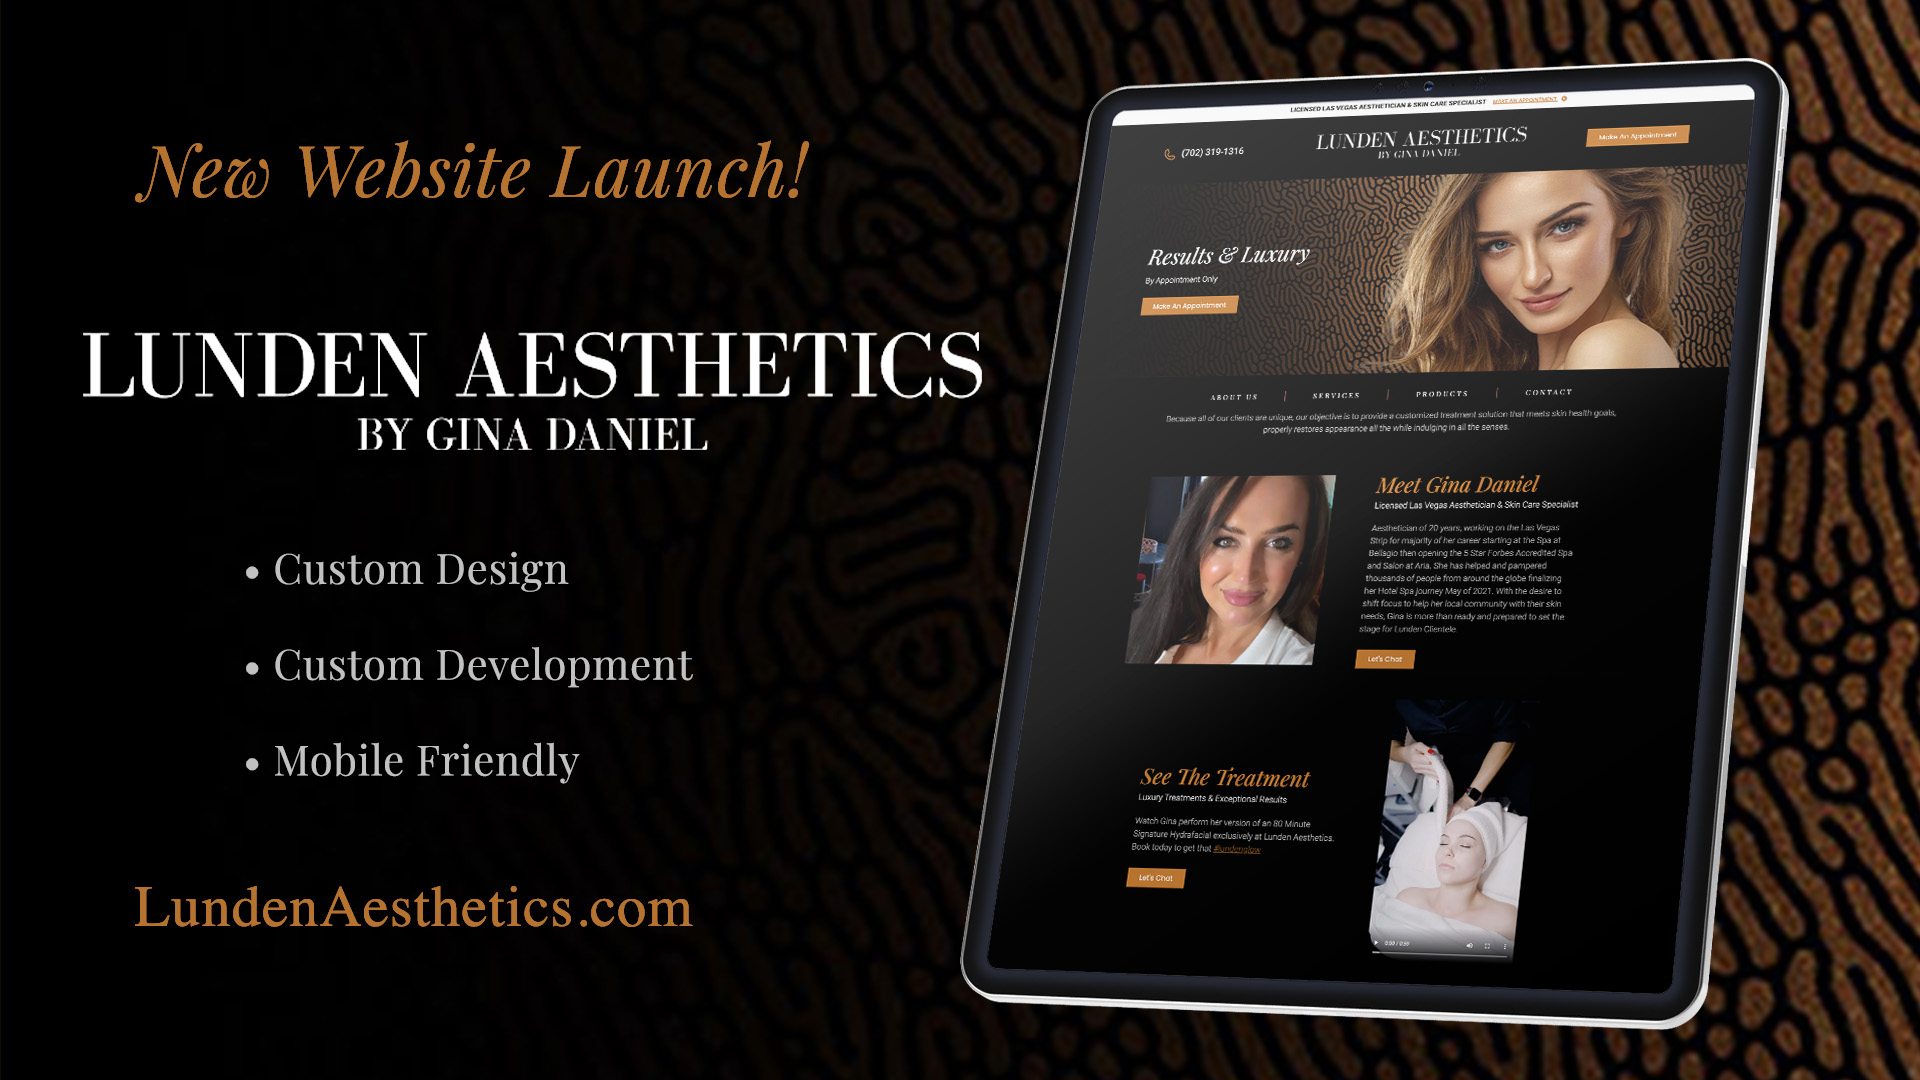 New Custom Website For Lunden Aesthetics